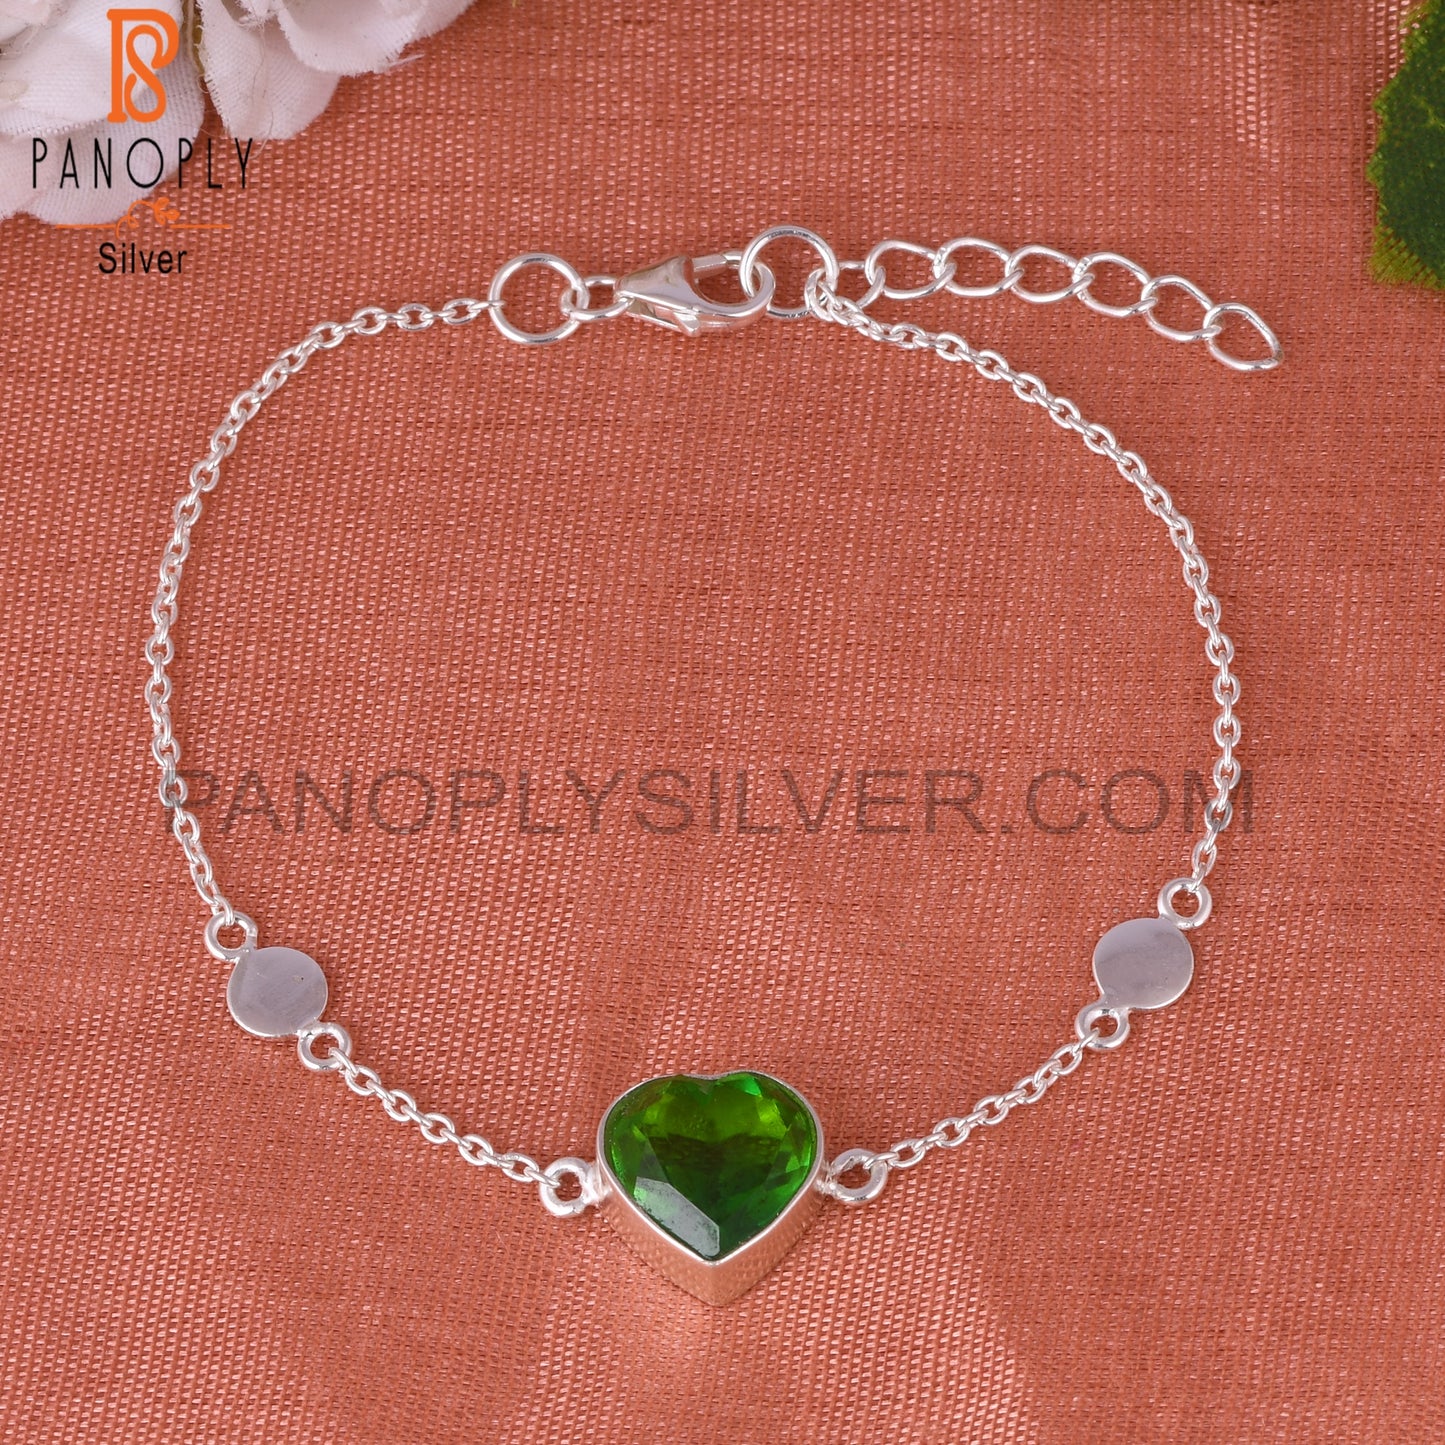 Bio Chrome Diopside Doublet Quartz Heart 925 Silver Bracelet